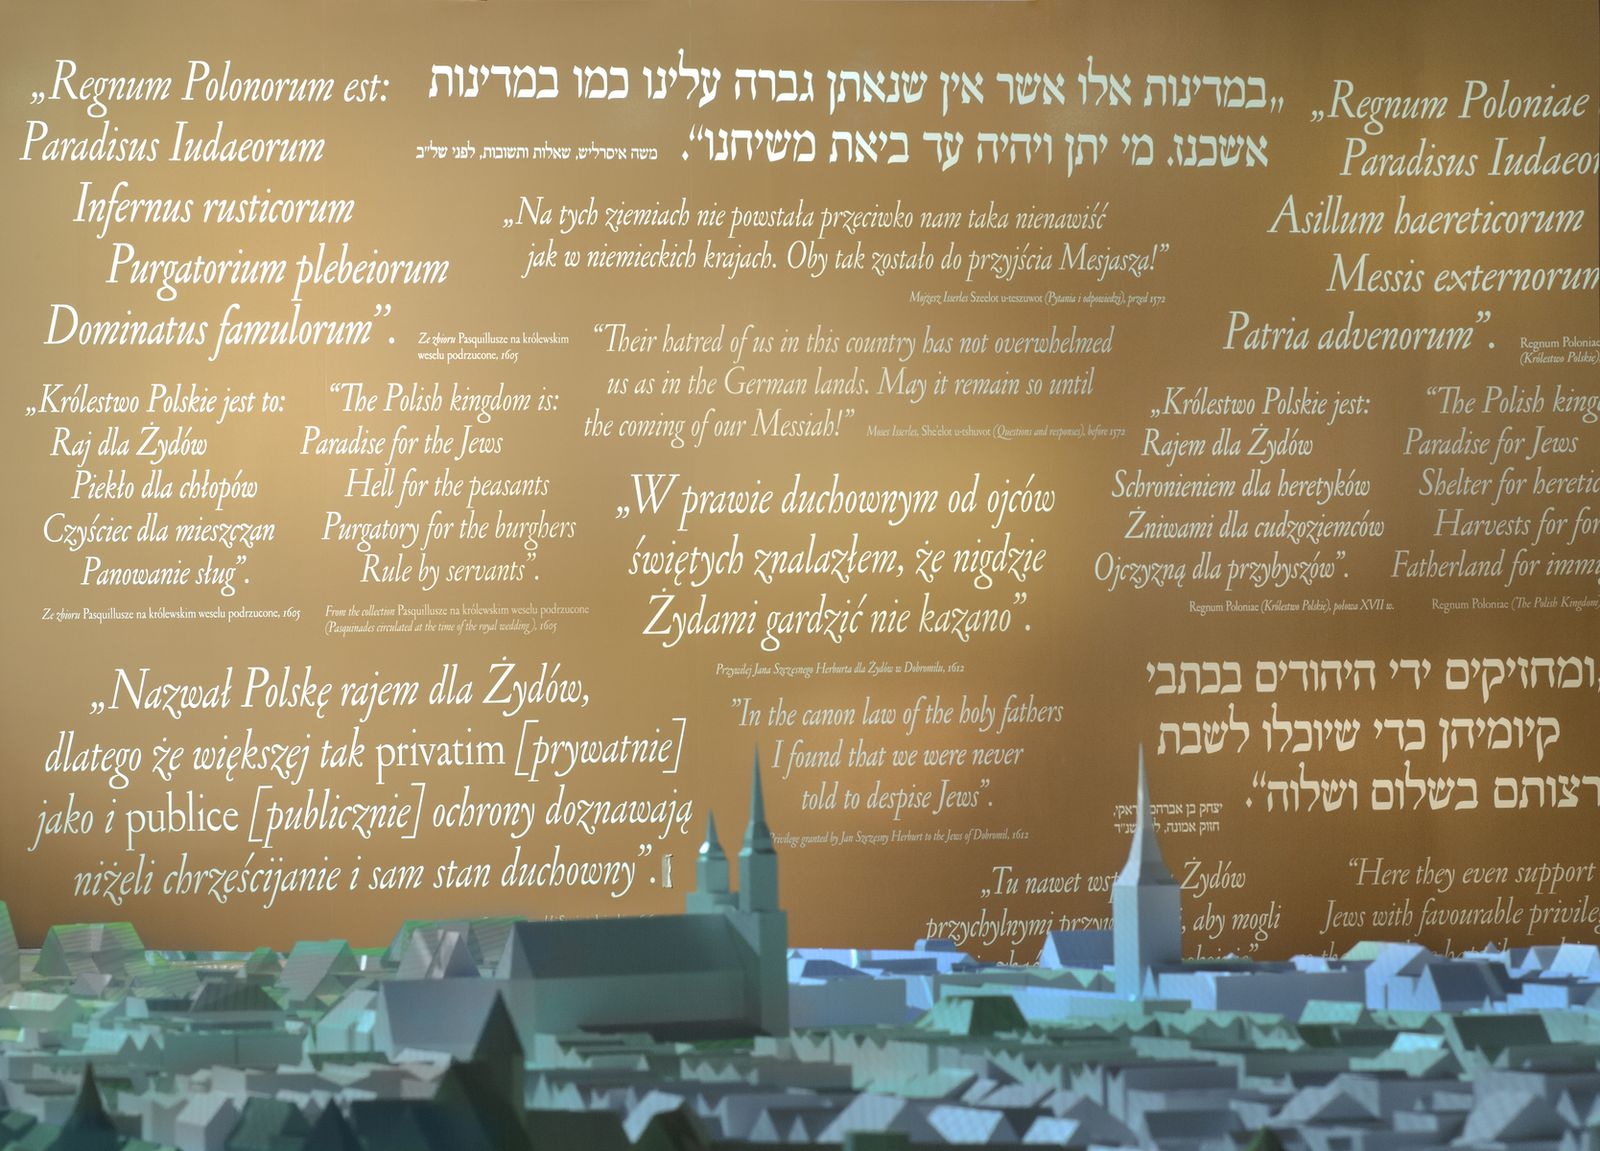 Napisy w języku polskim i hebrajskim na ścianie w jednej z galerii w Muzeum POLIN.